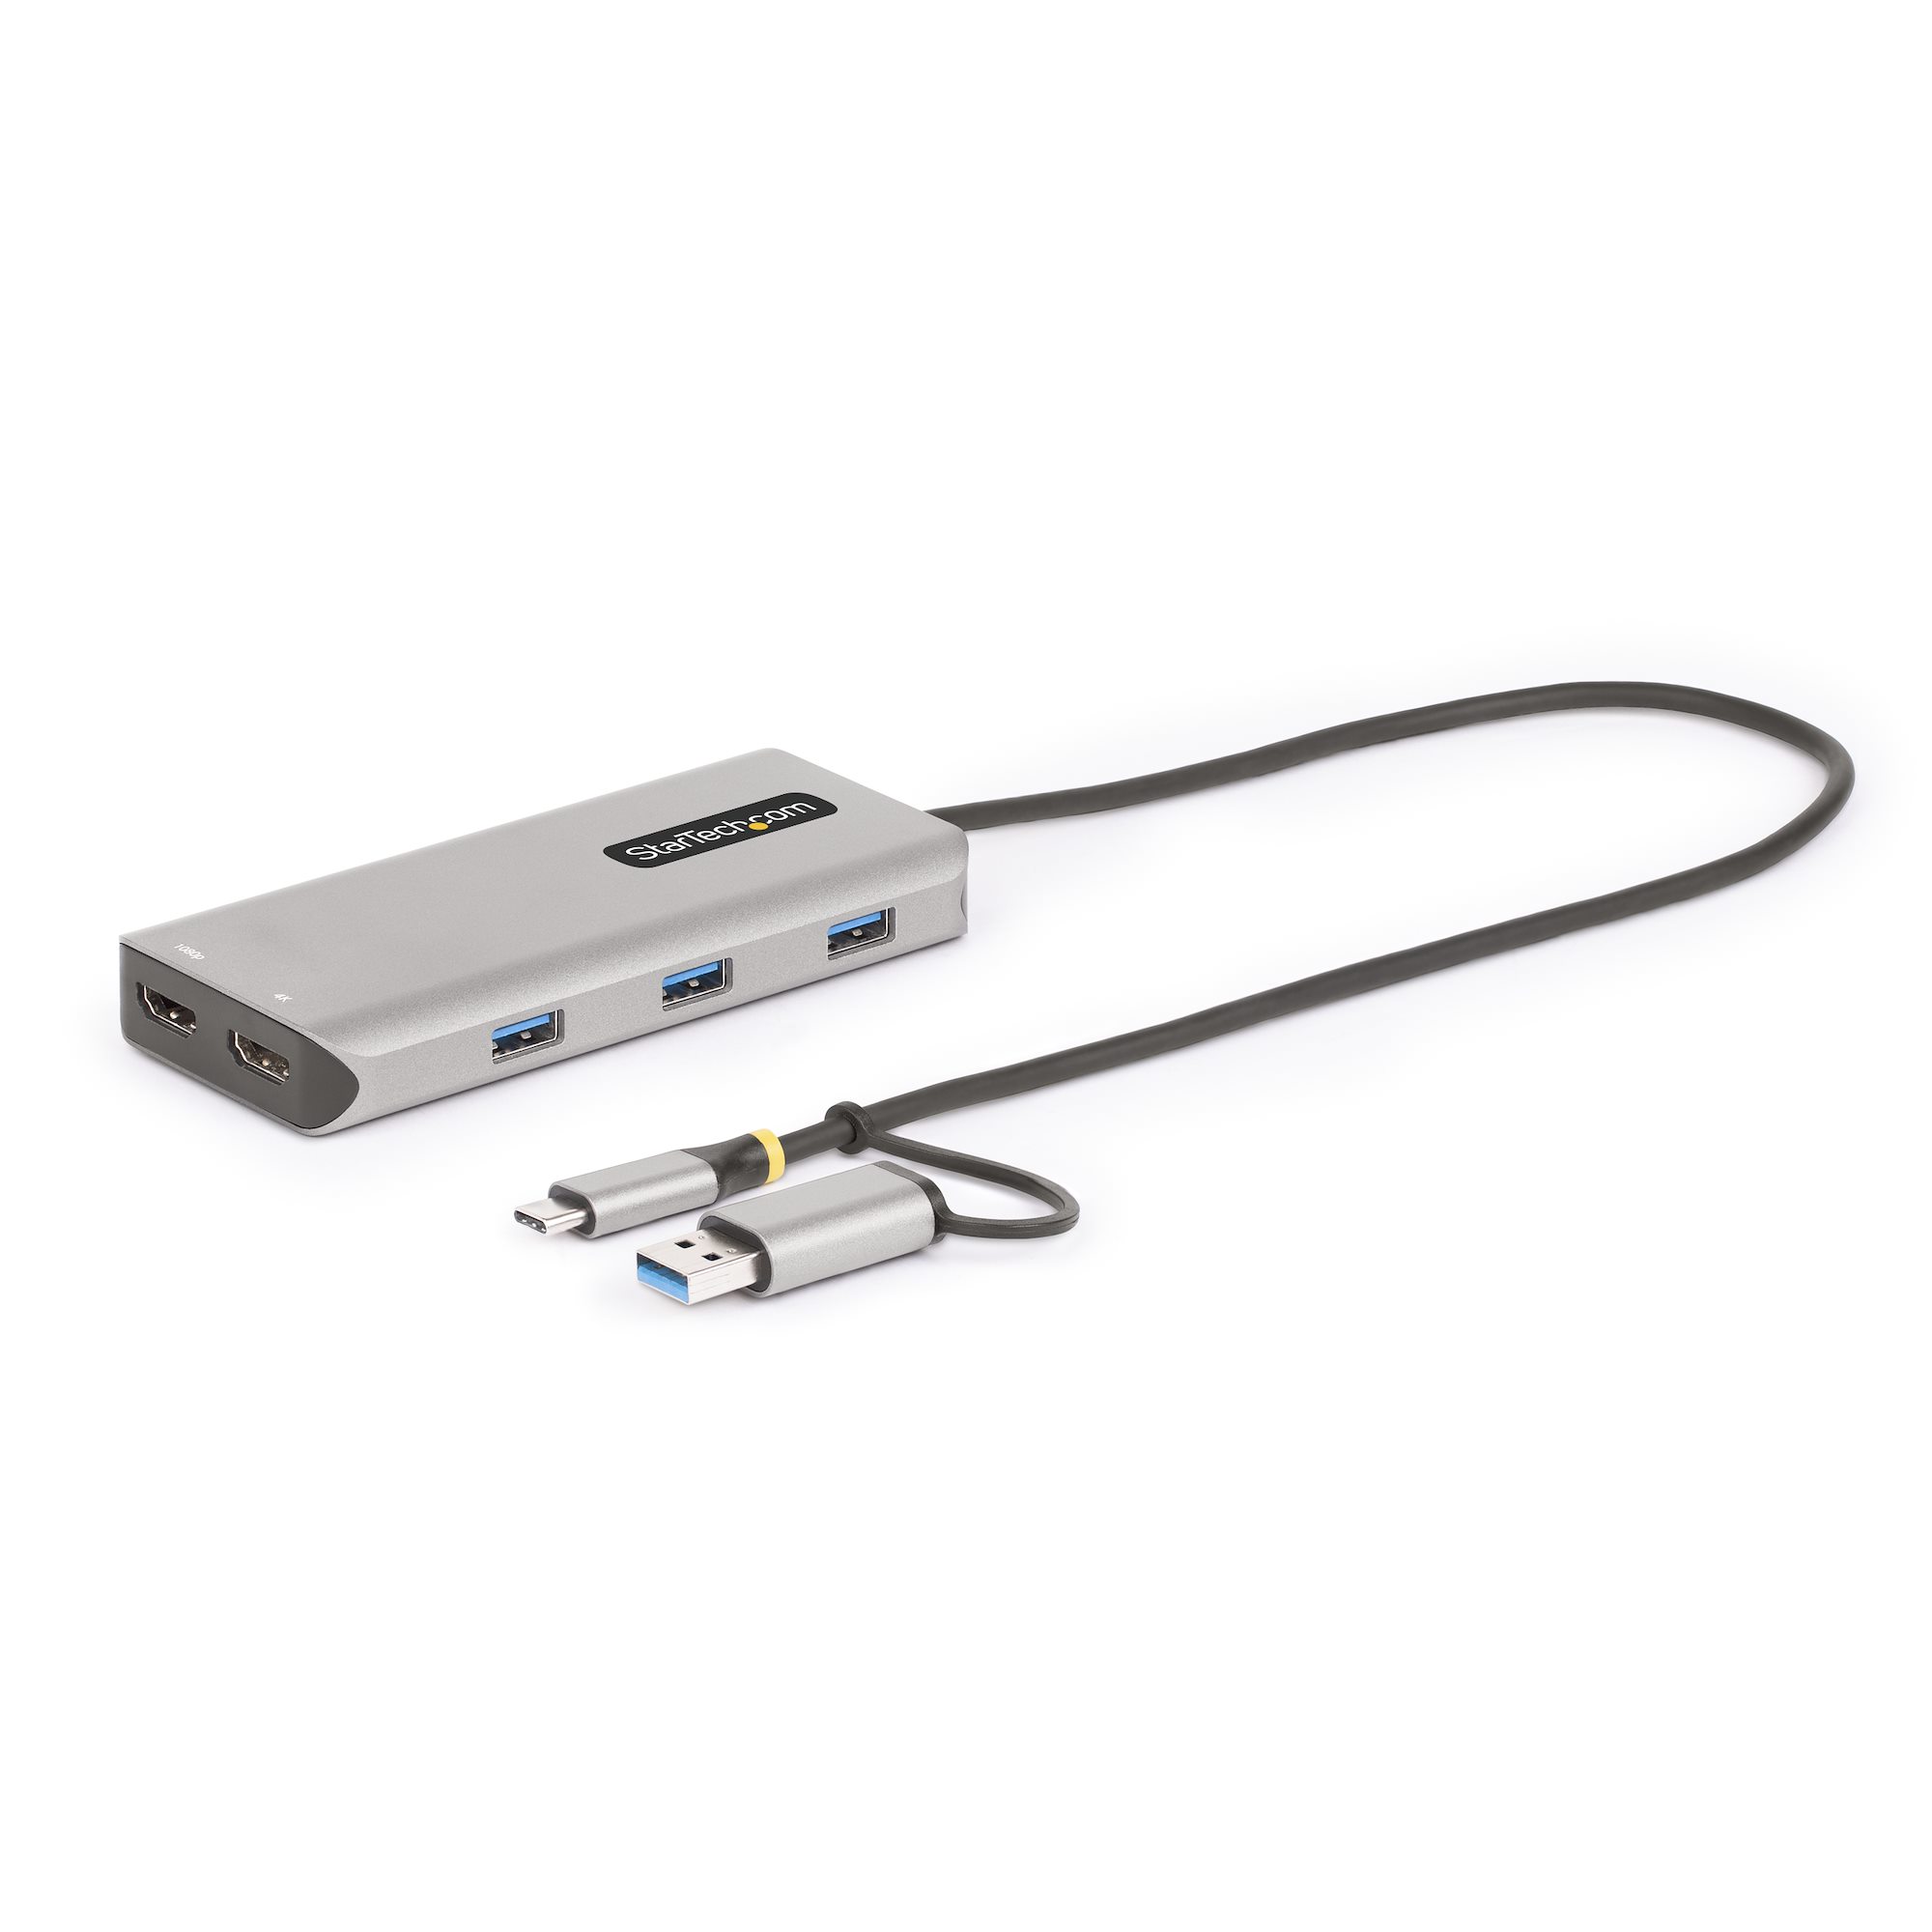 【167B-USBC-MULTIPORT】USB-C/USB-A MULTIPORT ADAPTER